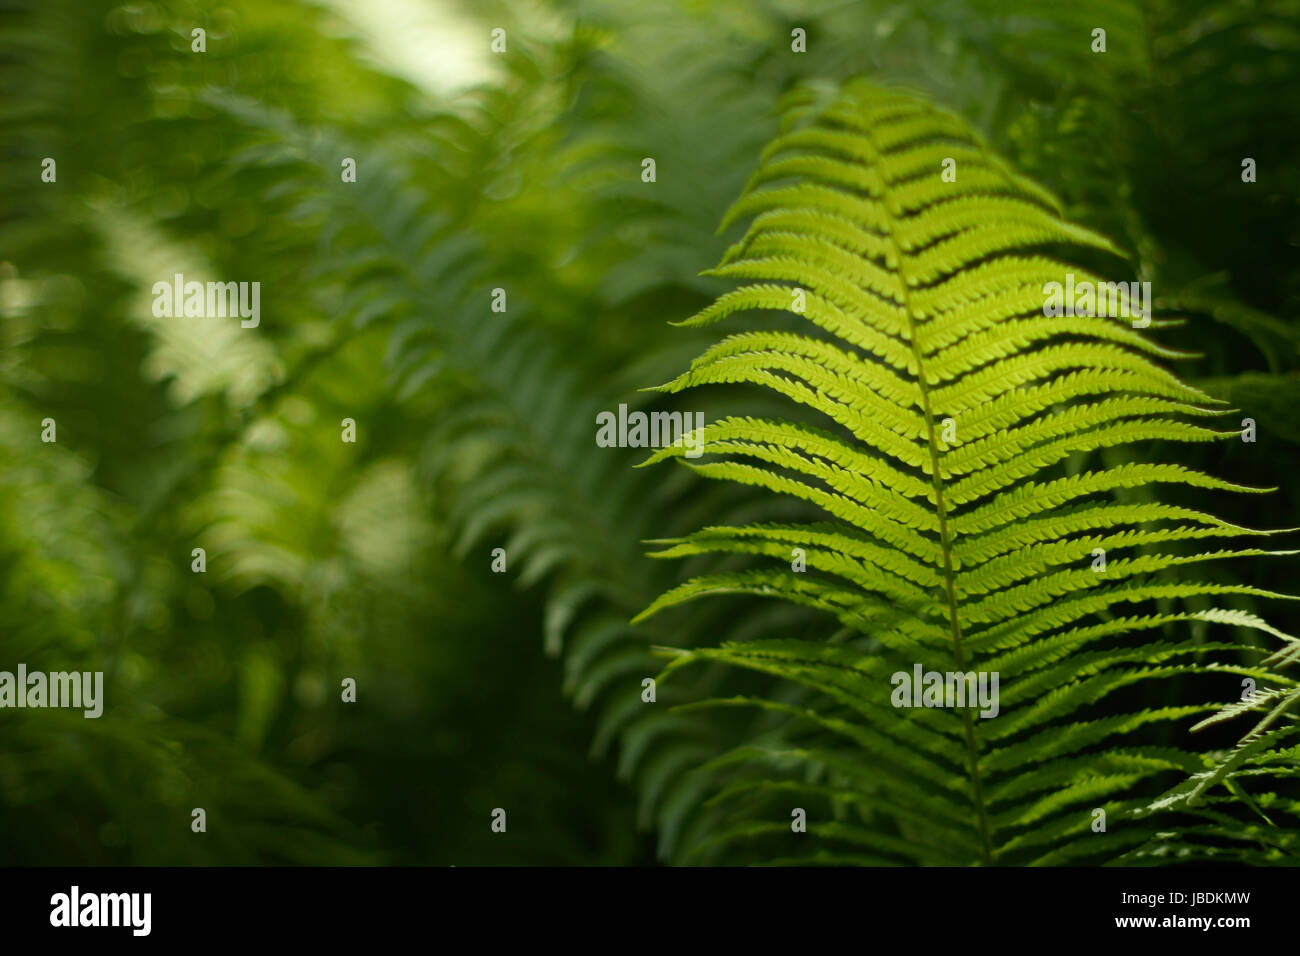 Verschwommen, abstrakten Hintergrund mit einem zarten Farn-Motiv. Dichte, üppige, grüne Vegetation im Garten. Die dominierende Farbe grün. Stockfoto